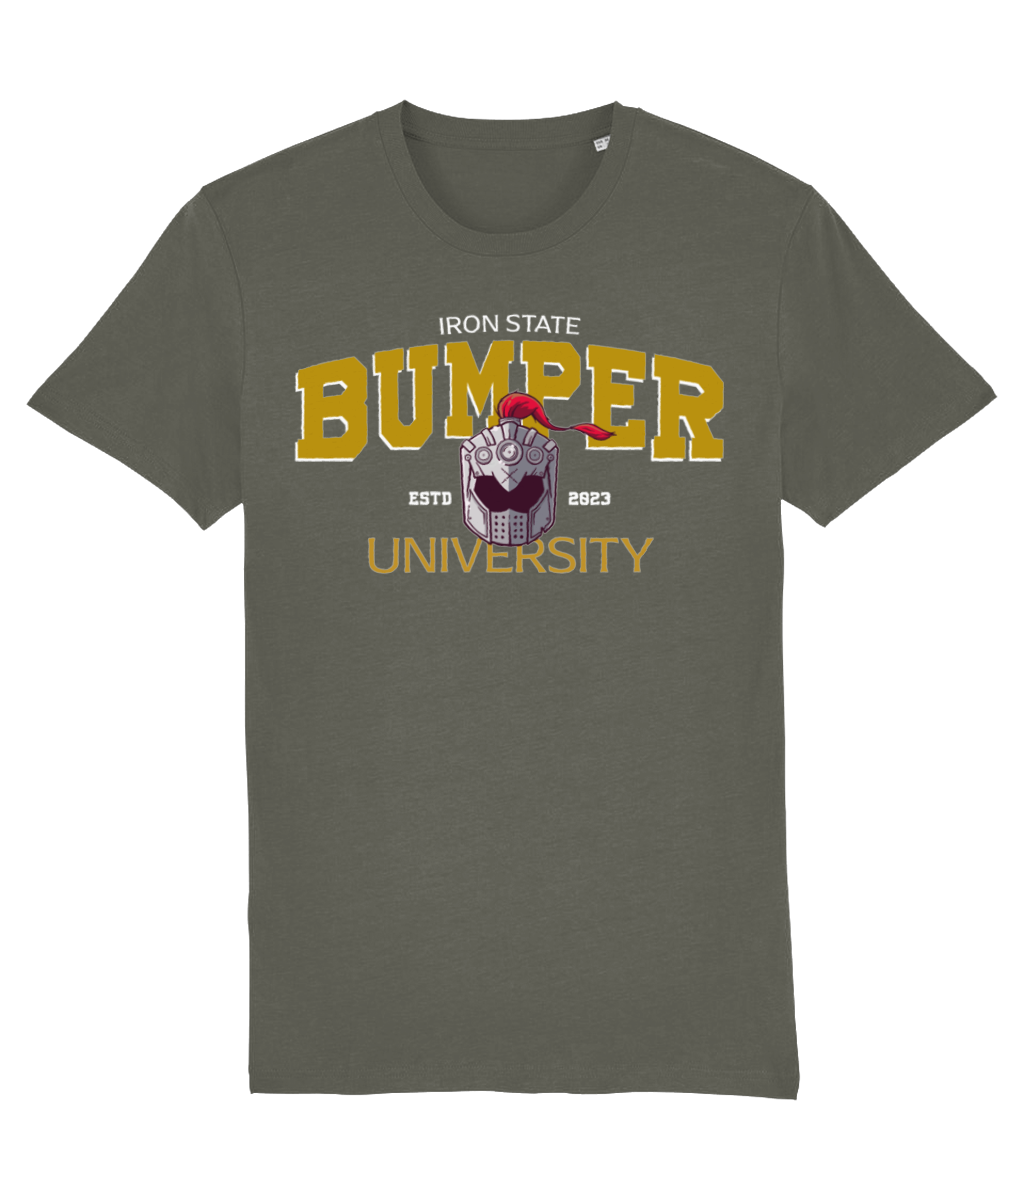 Bumper helm t-shirt - Bumper uni